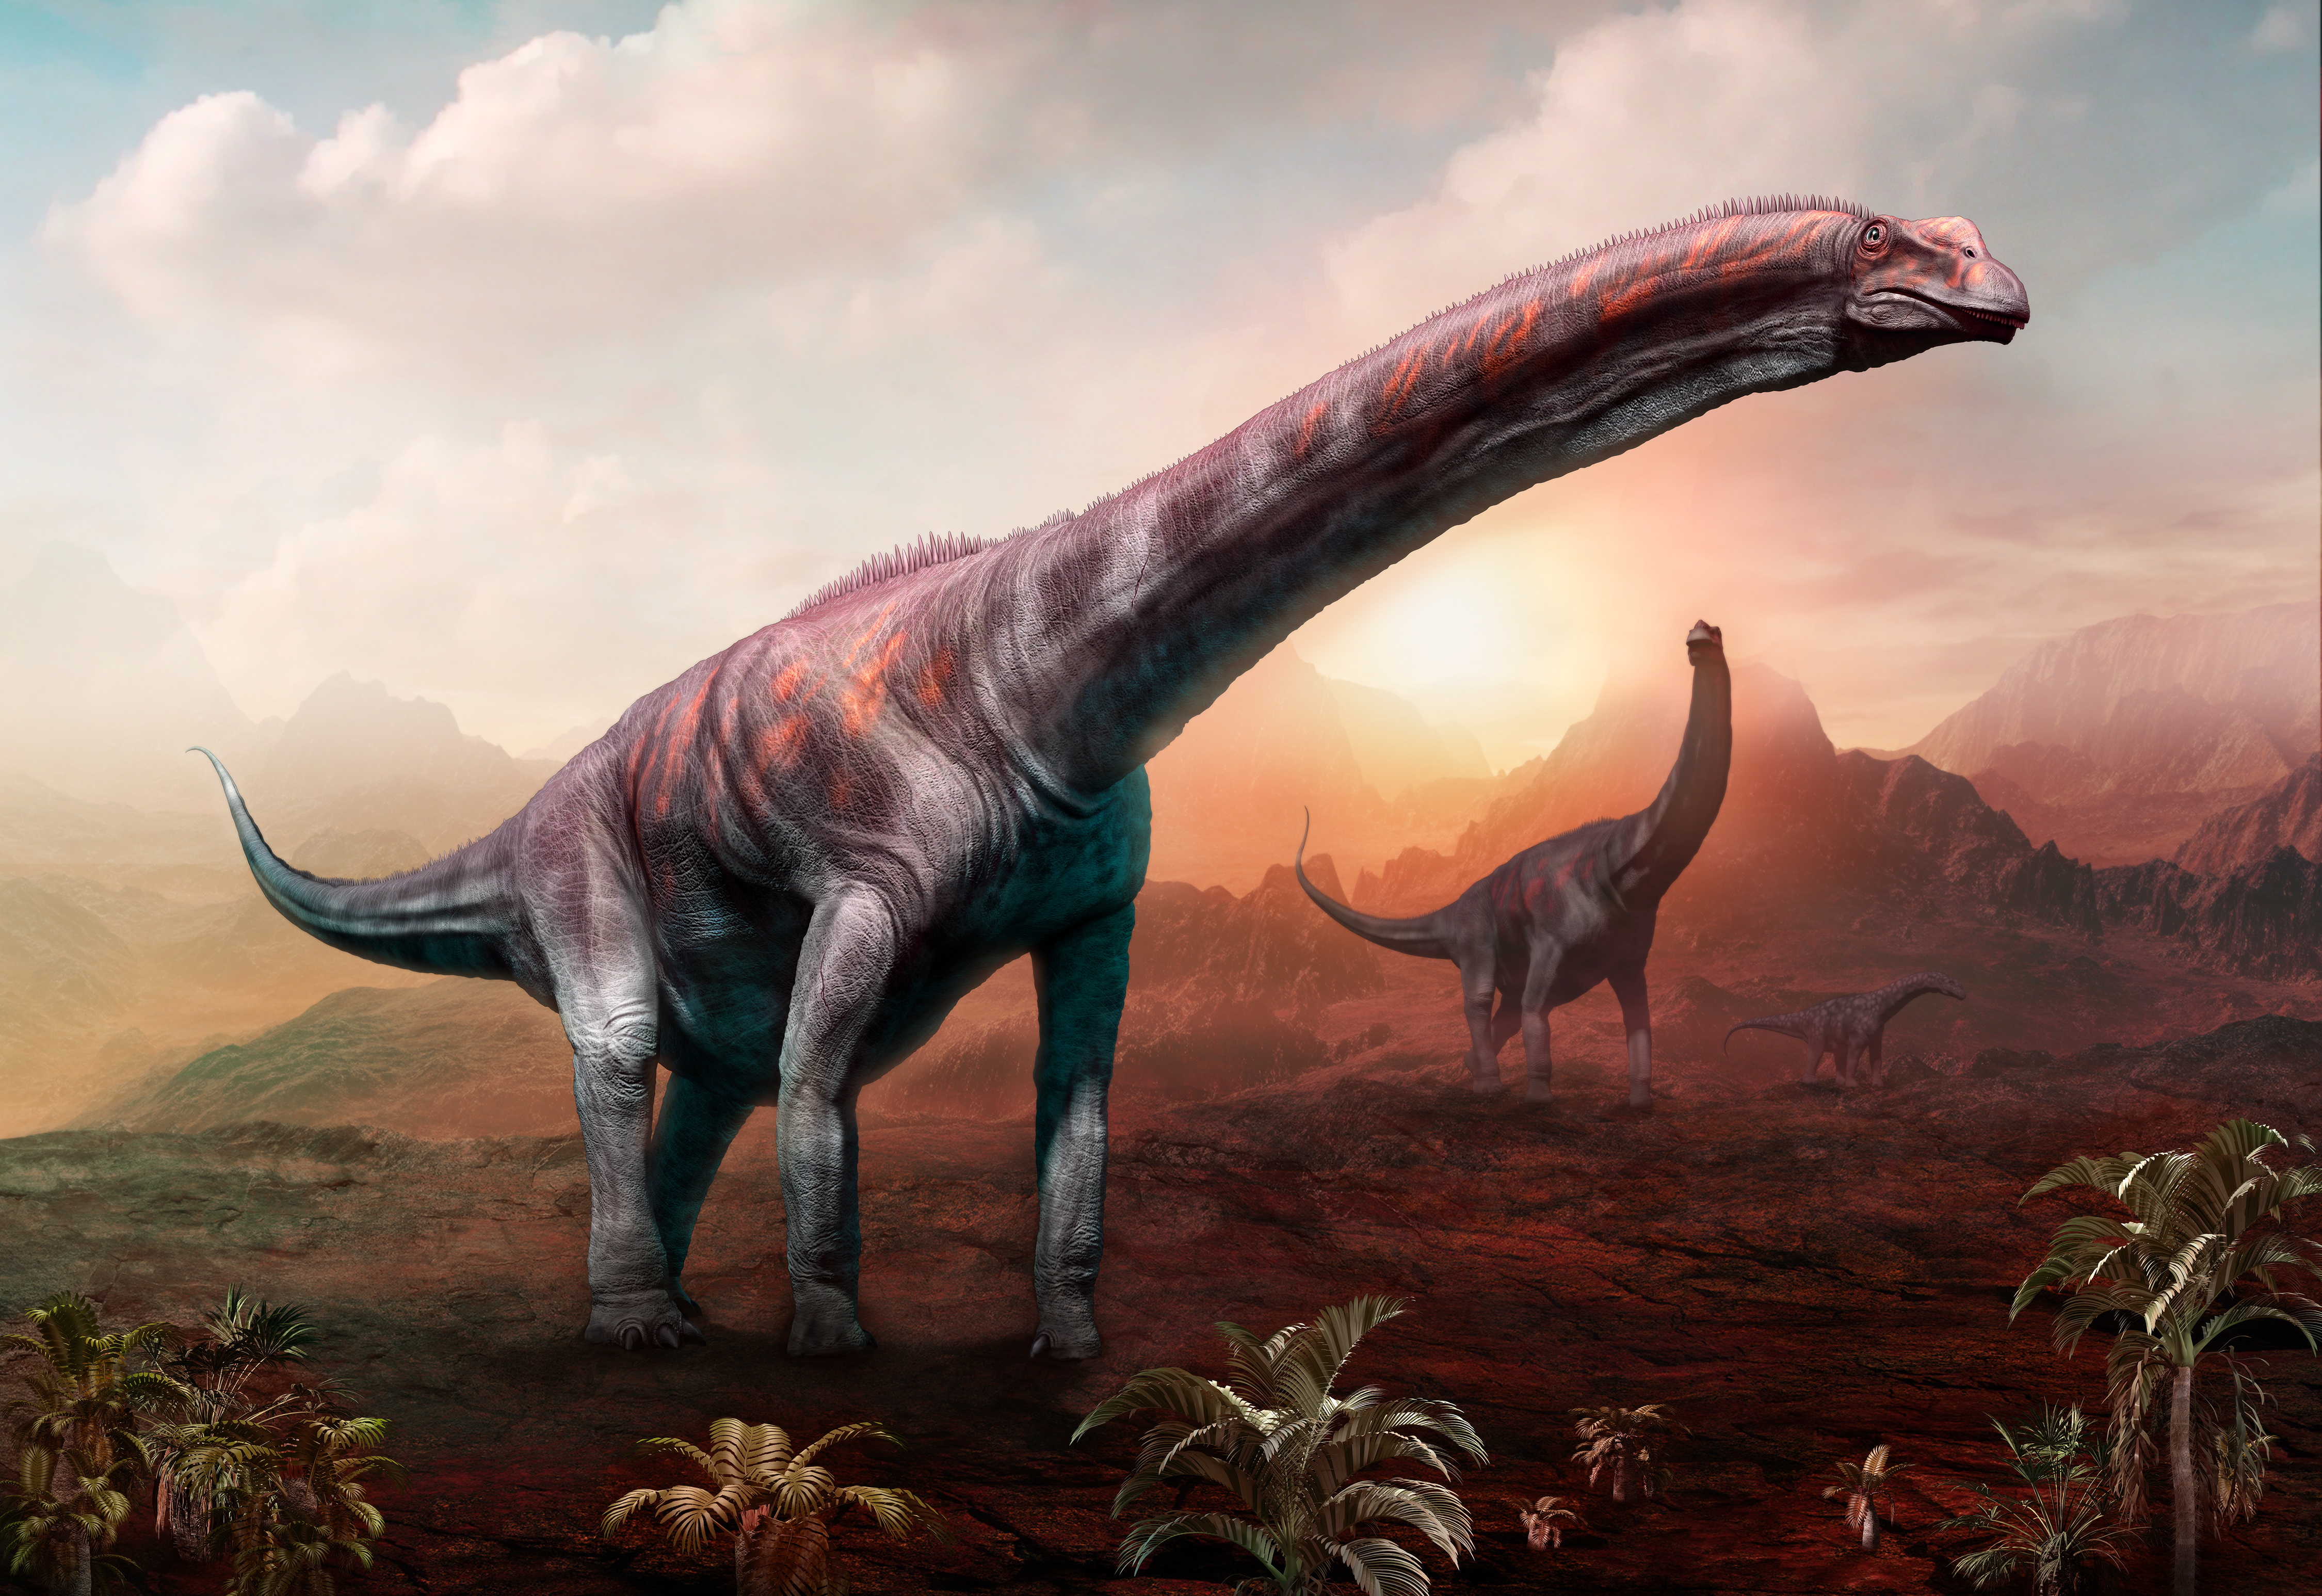 Image de synthèse montrant deux Argentinosaurus, le plus grand dinosaure connu à ce jour.